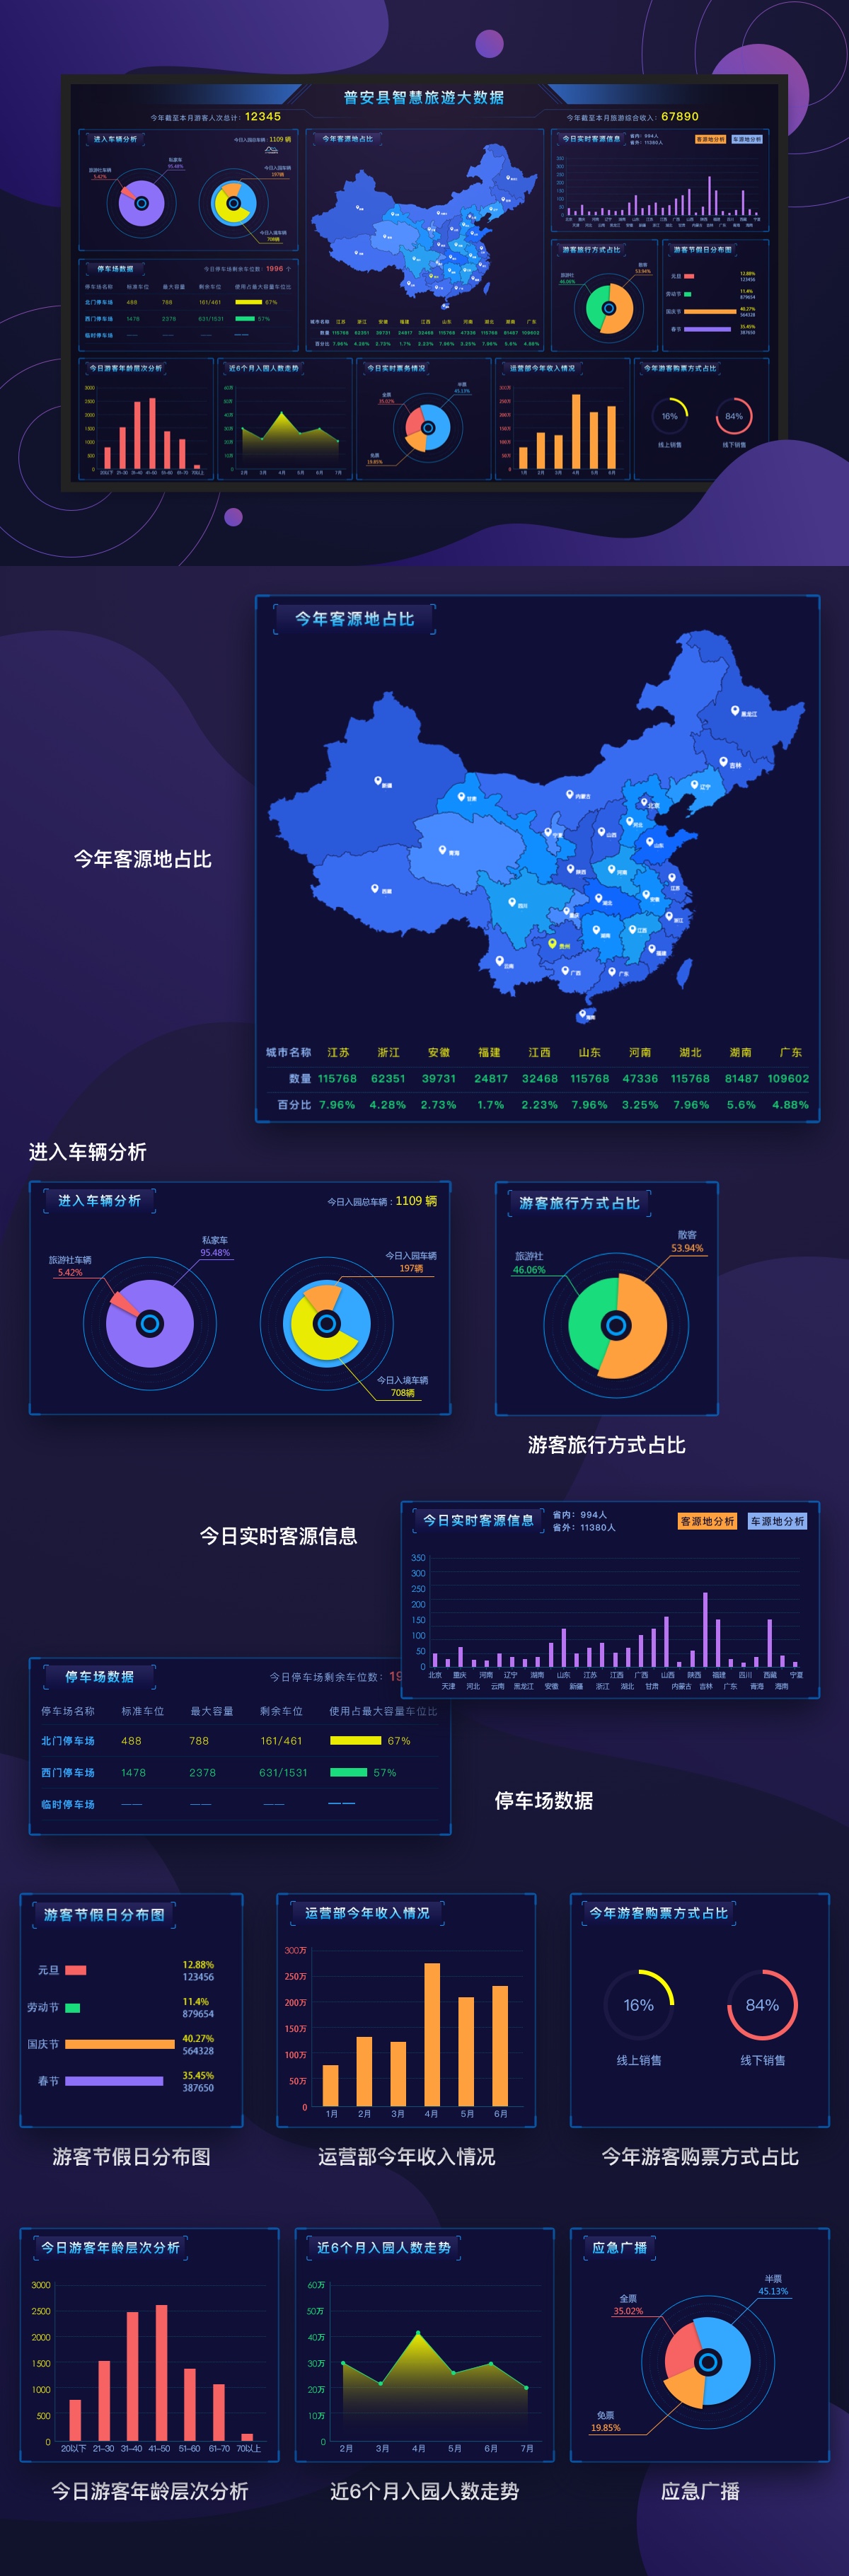 案例-贵州大数据平台.jpg